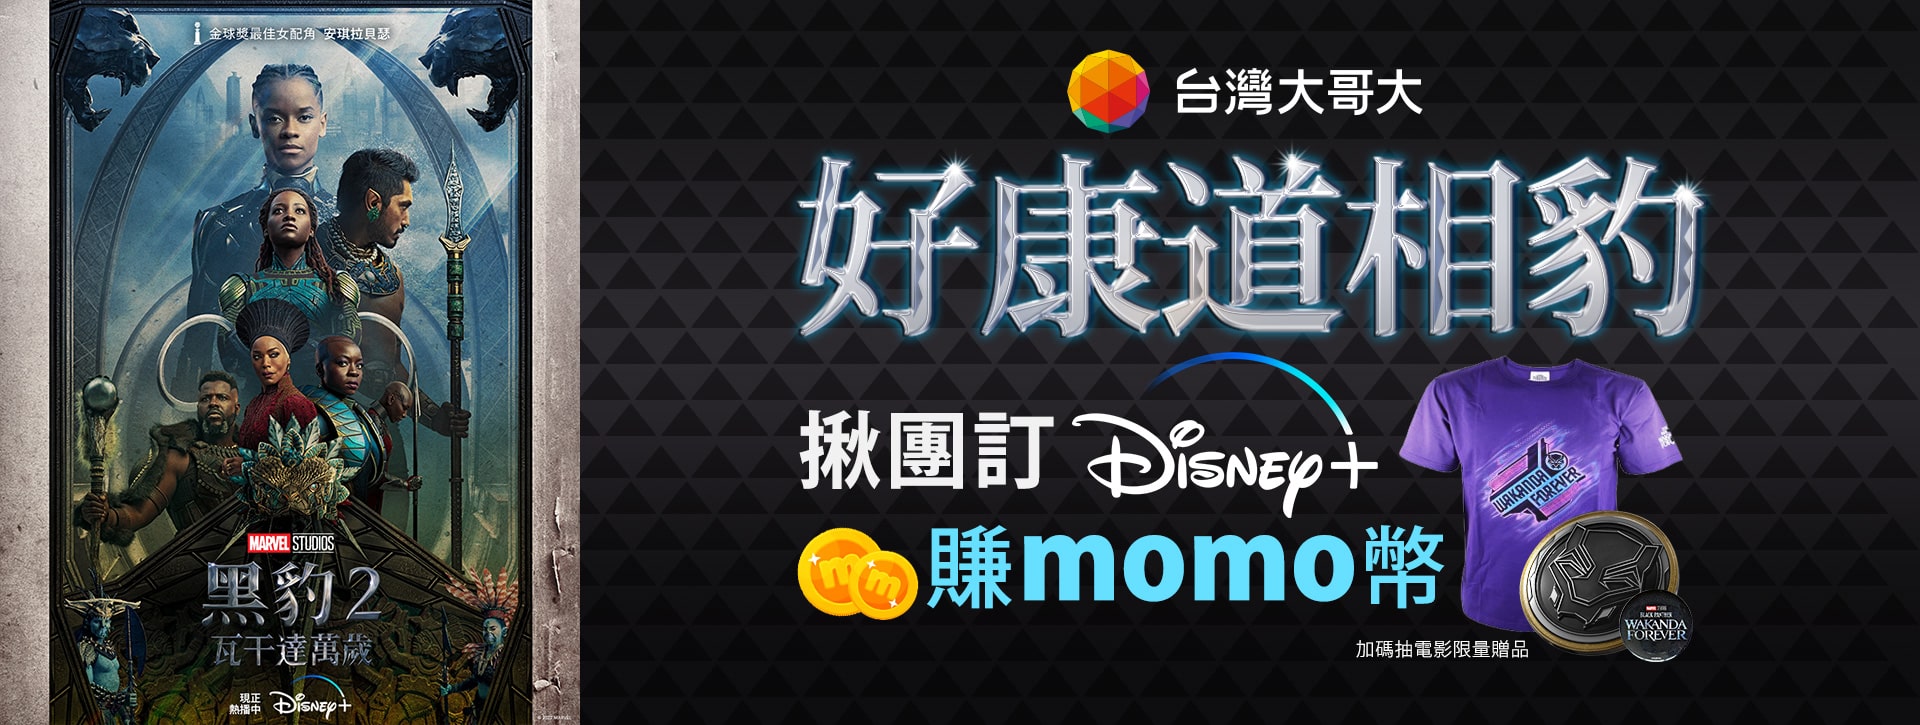 [情報] Disney+月訂方案送momo幣